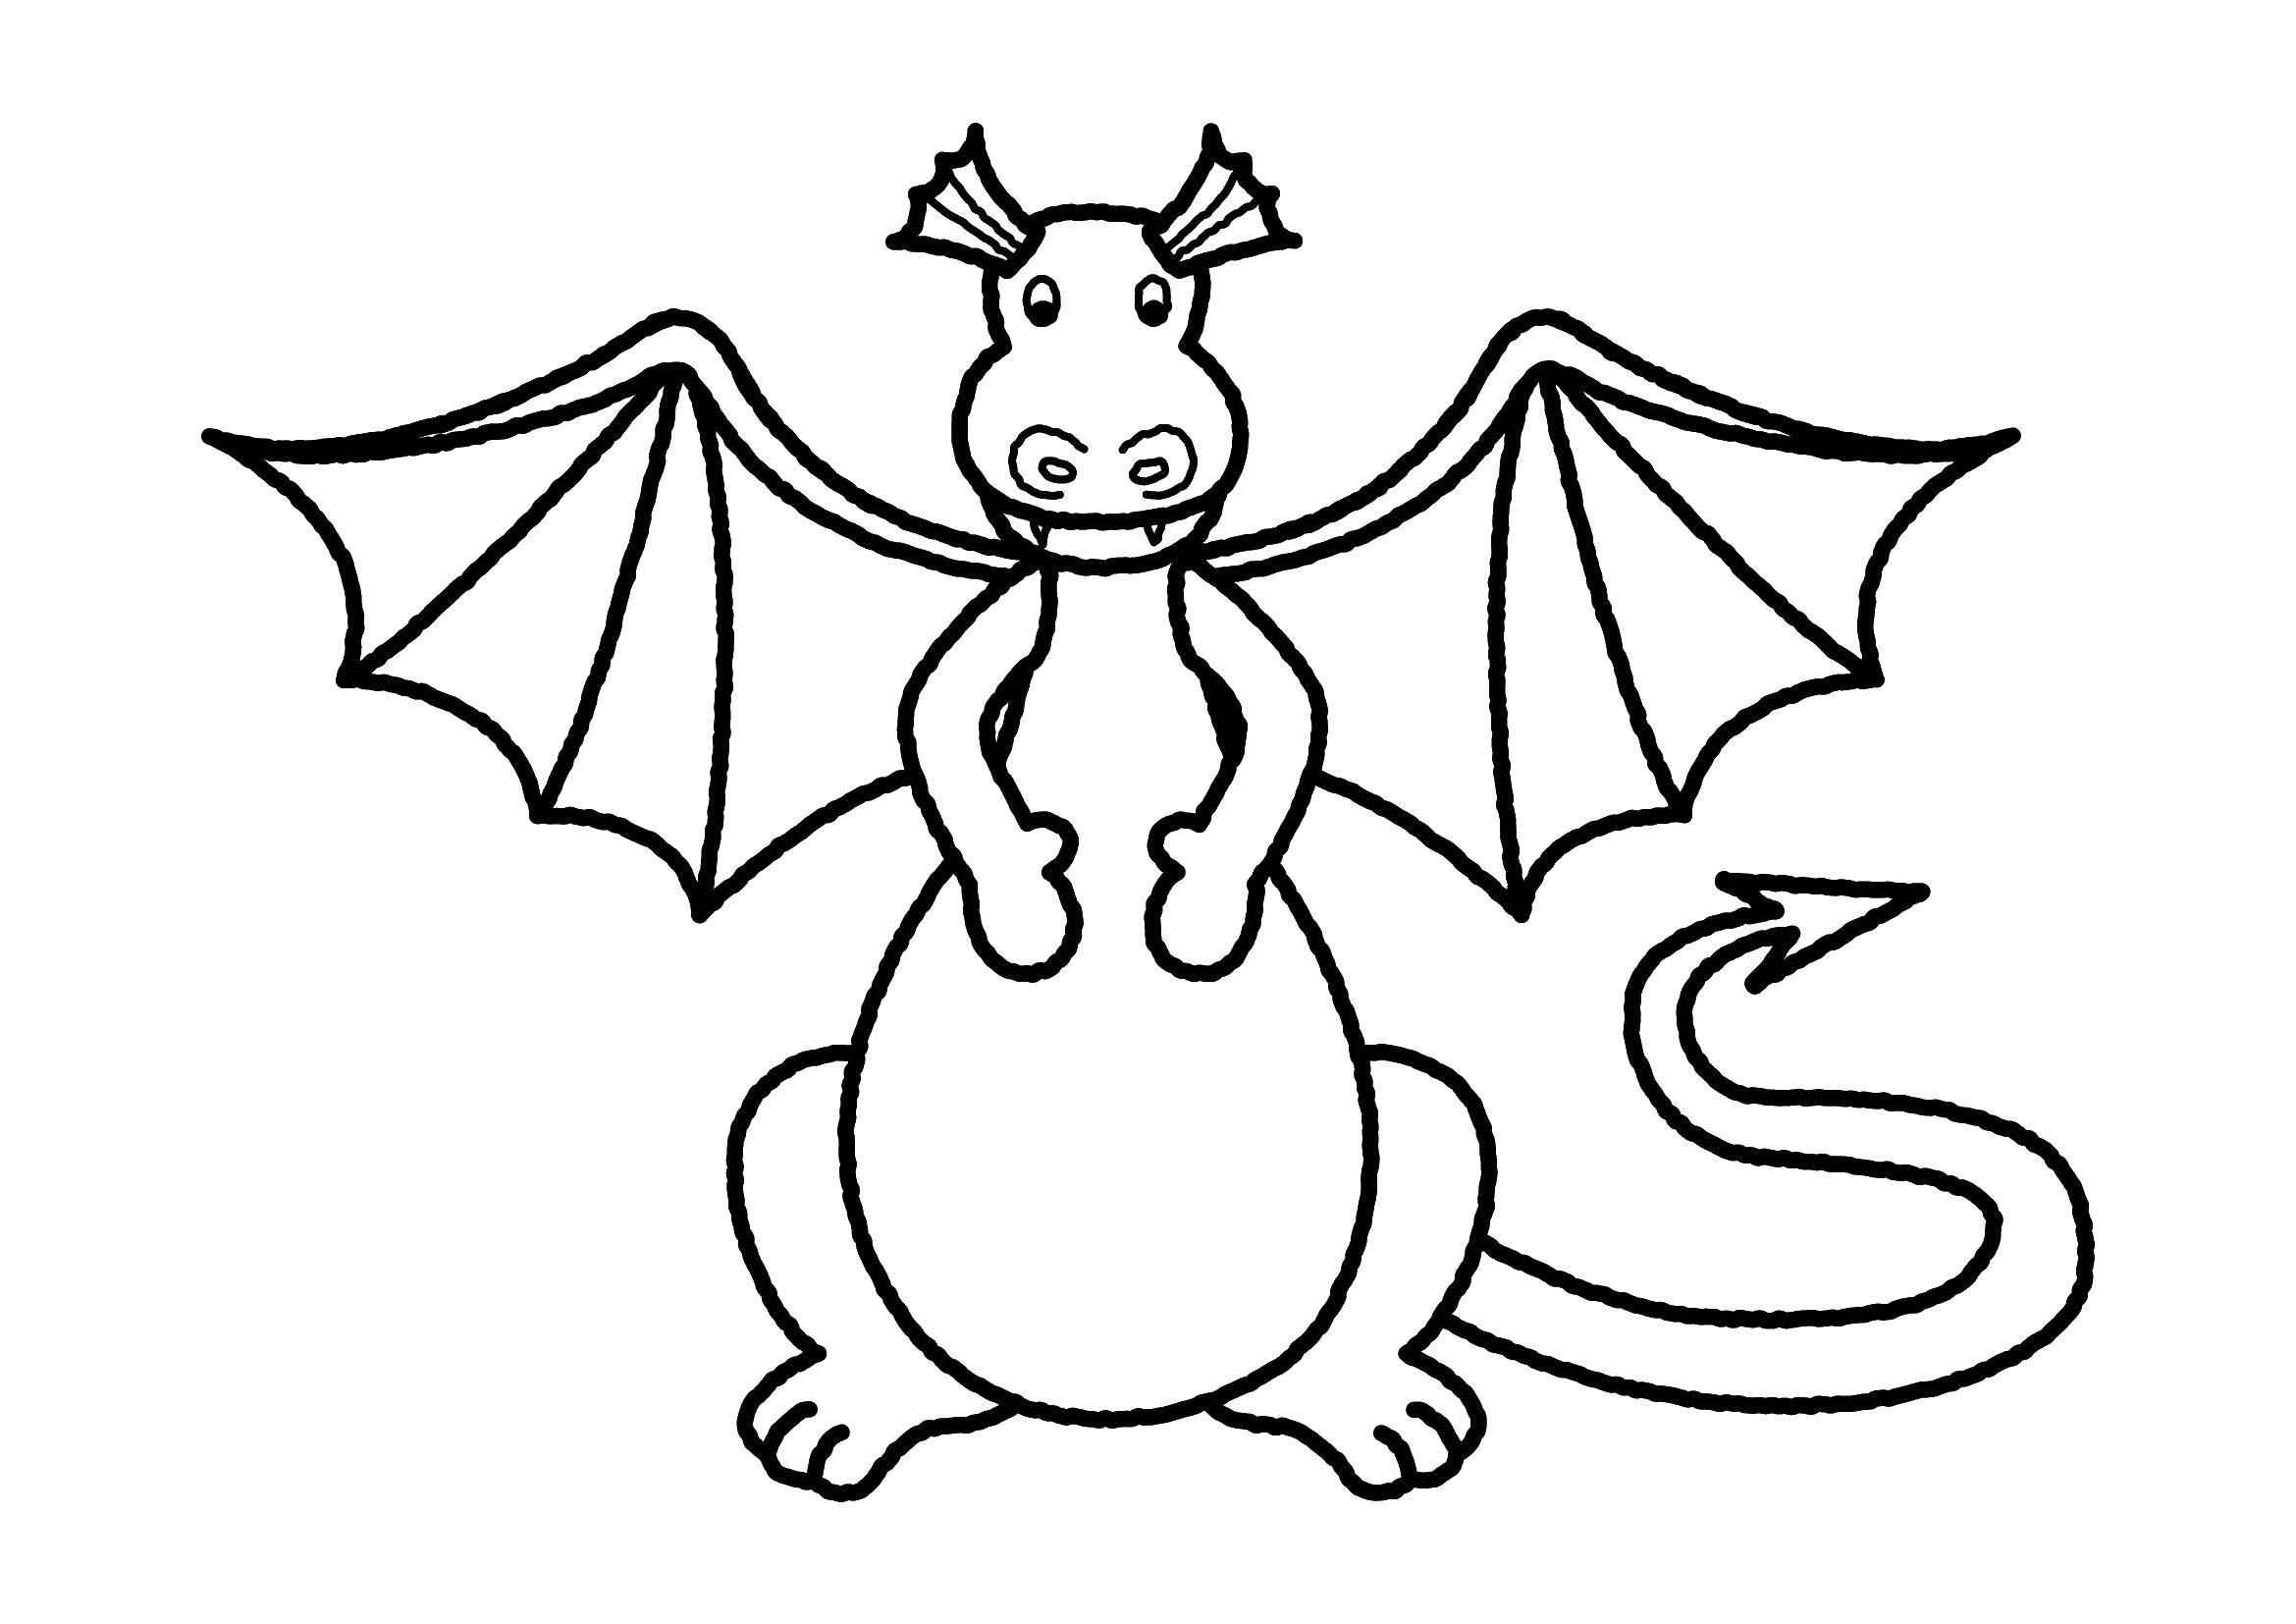 Опис: розмальовки  Маленький дракончик. Категорія: Дракони. Теги:  дракони, крила, дракончики.